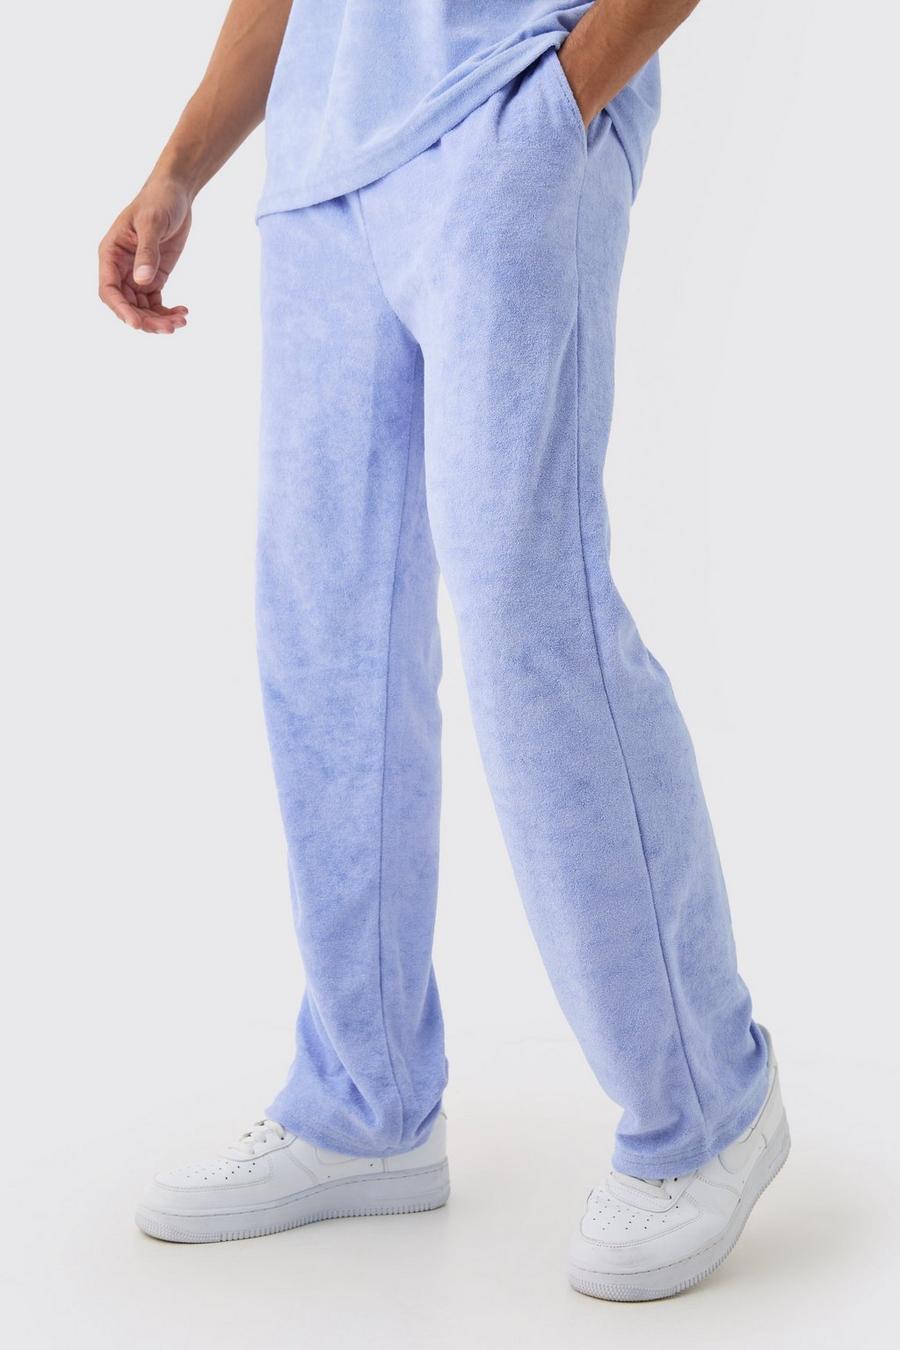 Pantalón deportivo holgado de felpa, Dusty blue image number 1